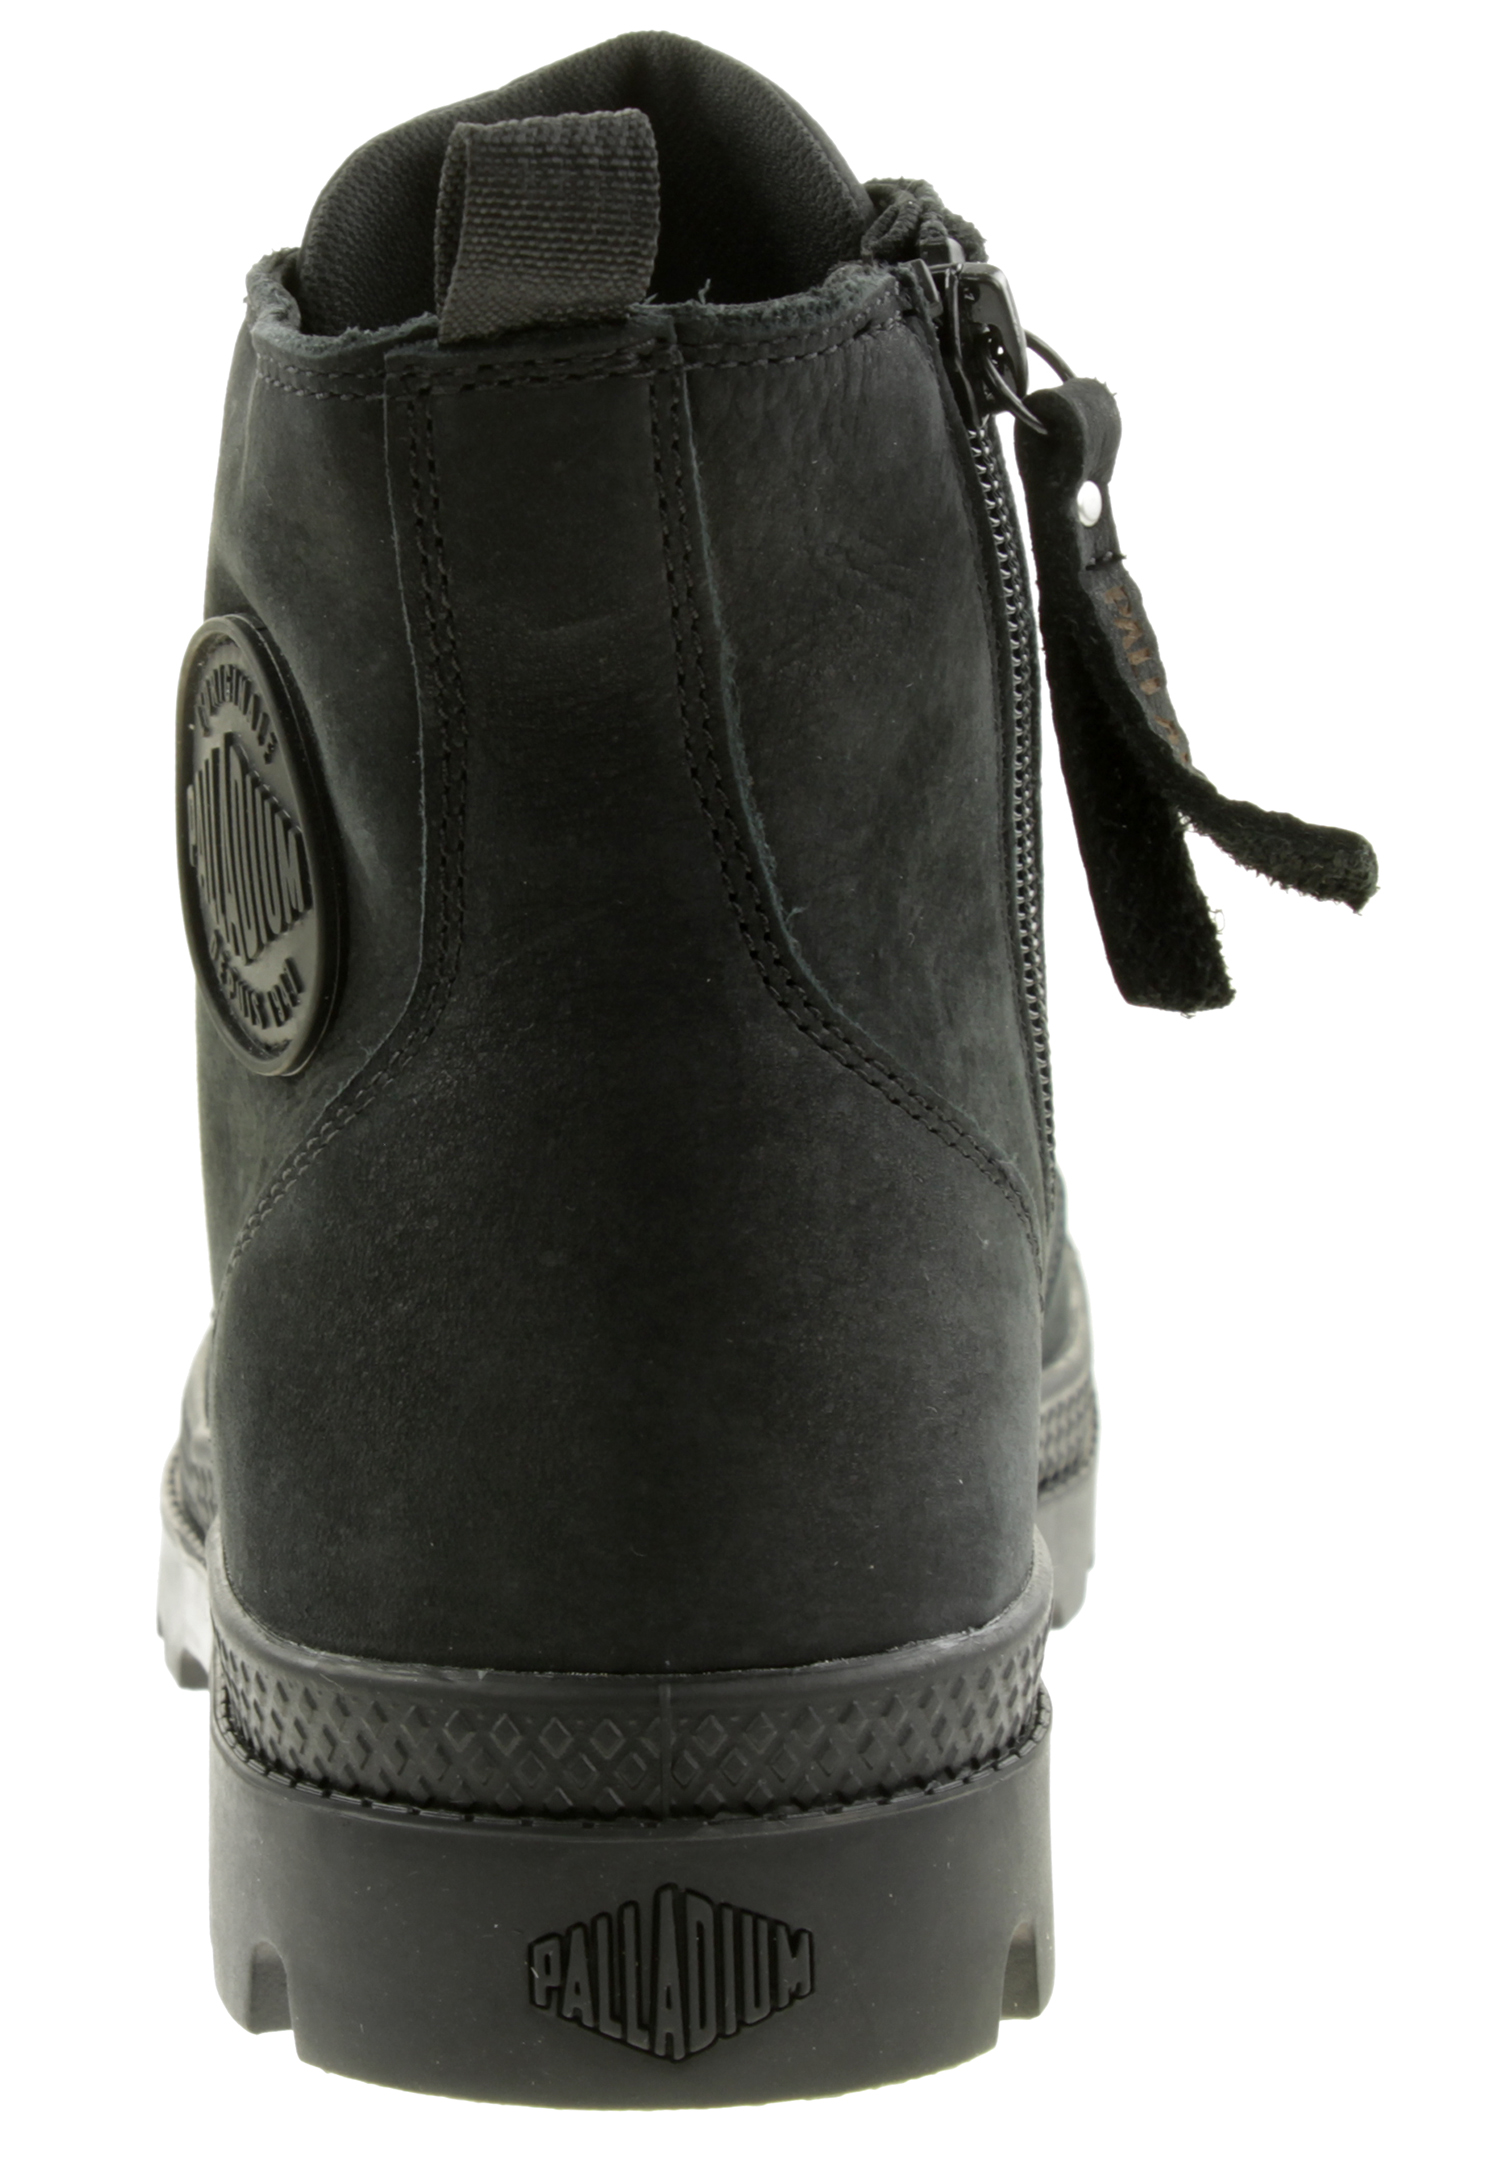 PALLADIUM Damen Pampa Hi Zip SL W Winter Ankle Boots Stiefelette 97224 Schwarz 